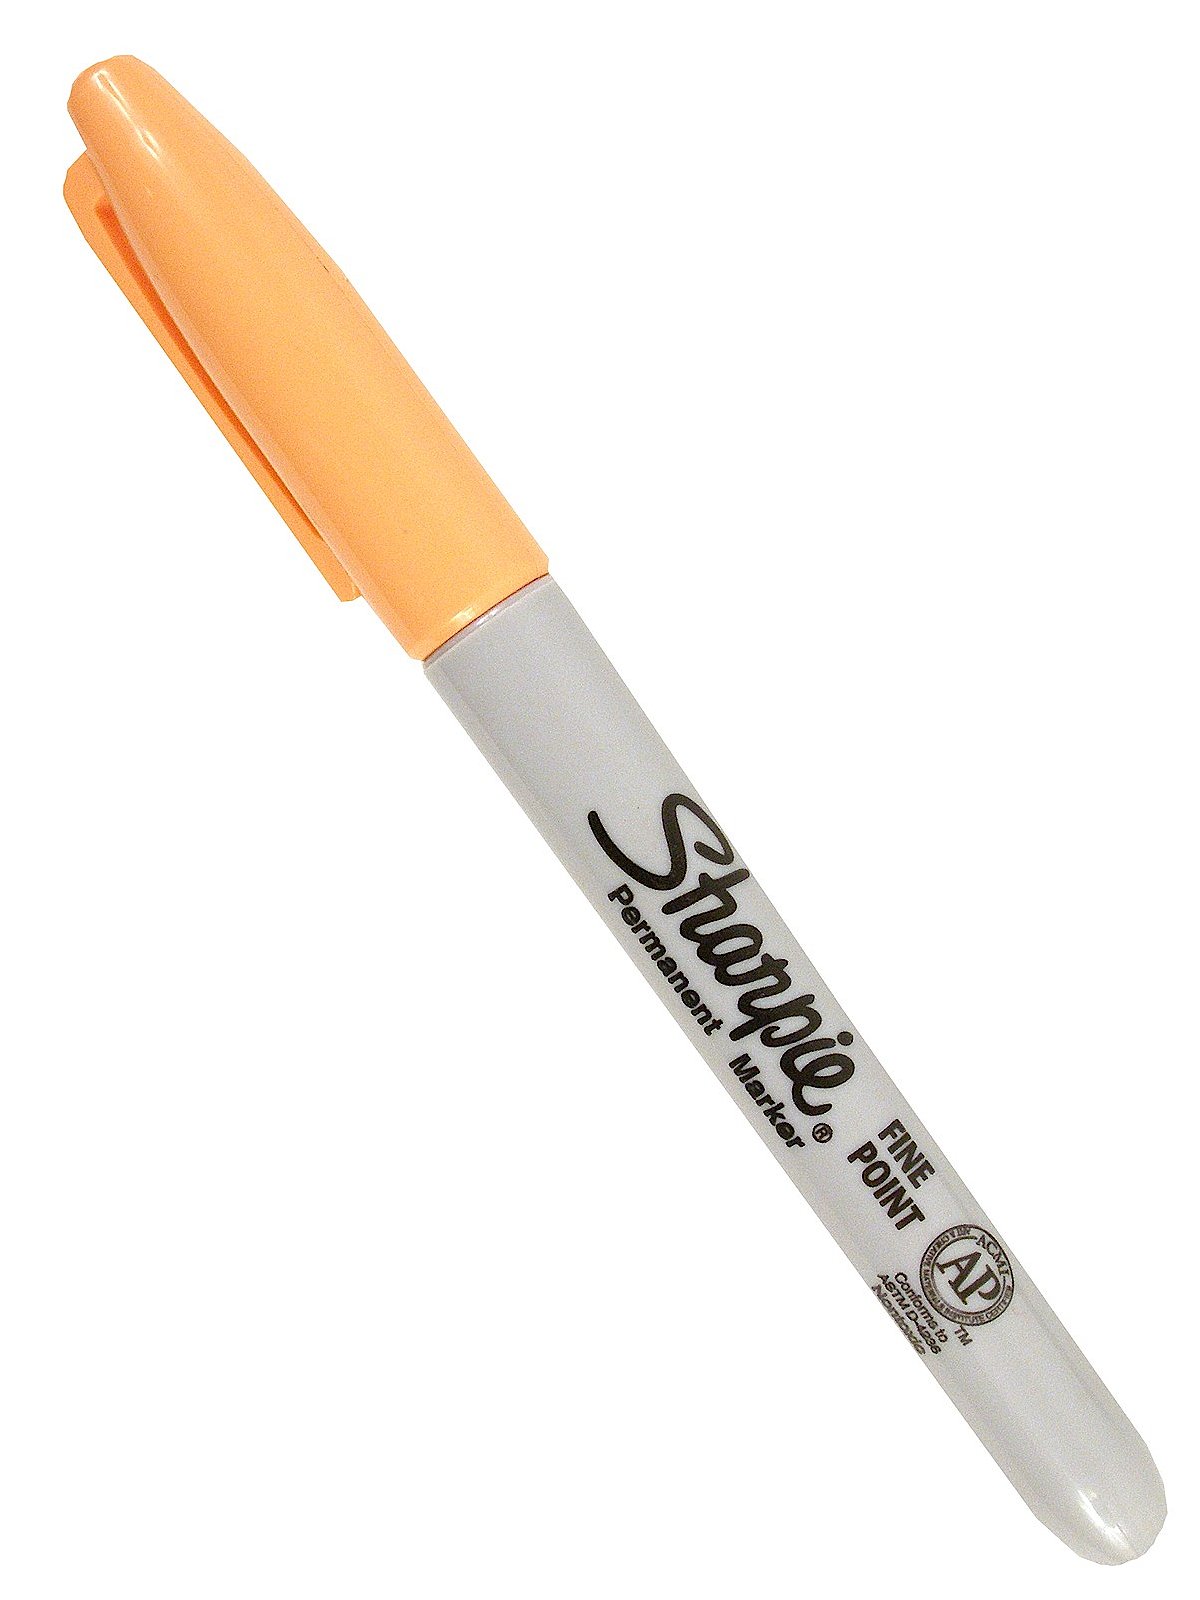 Sharpie Fine Point Pens